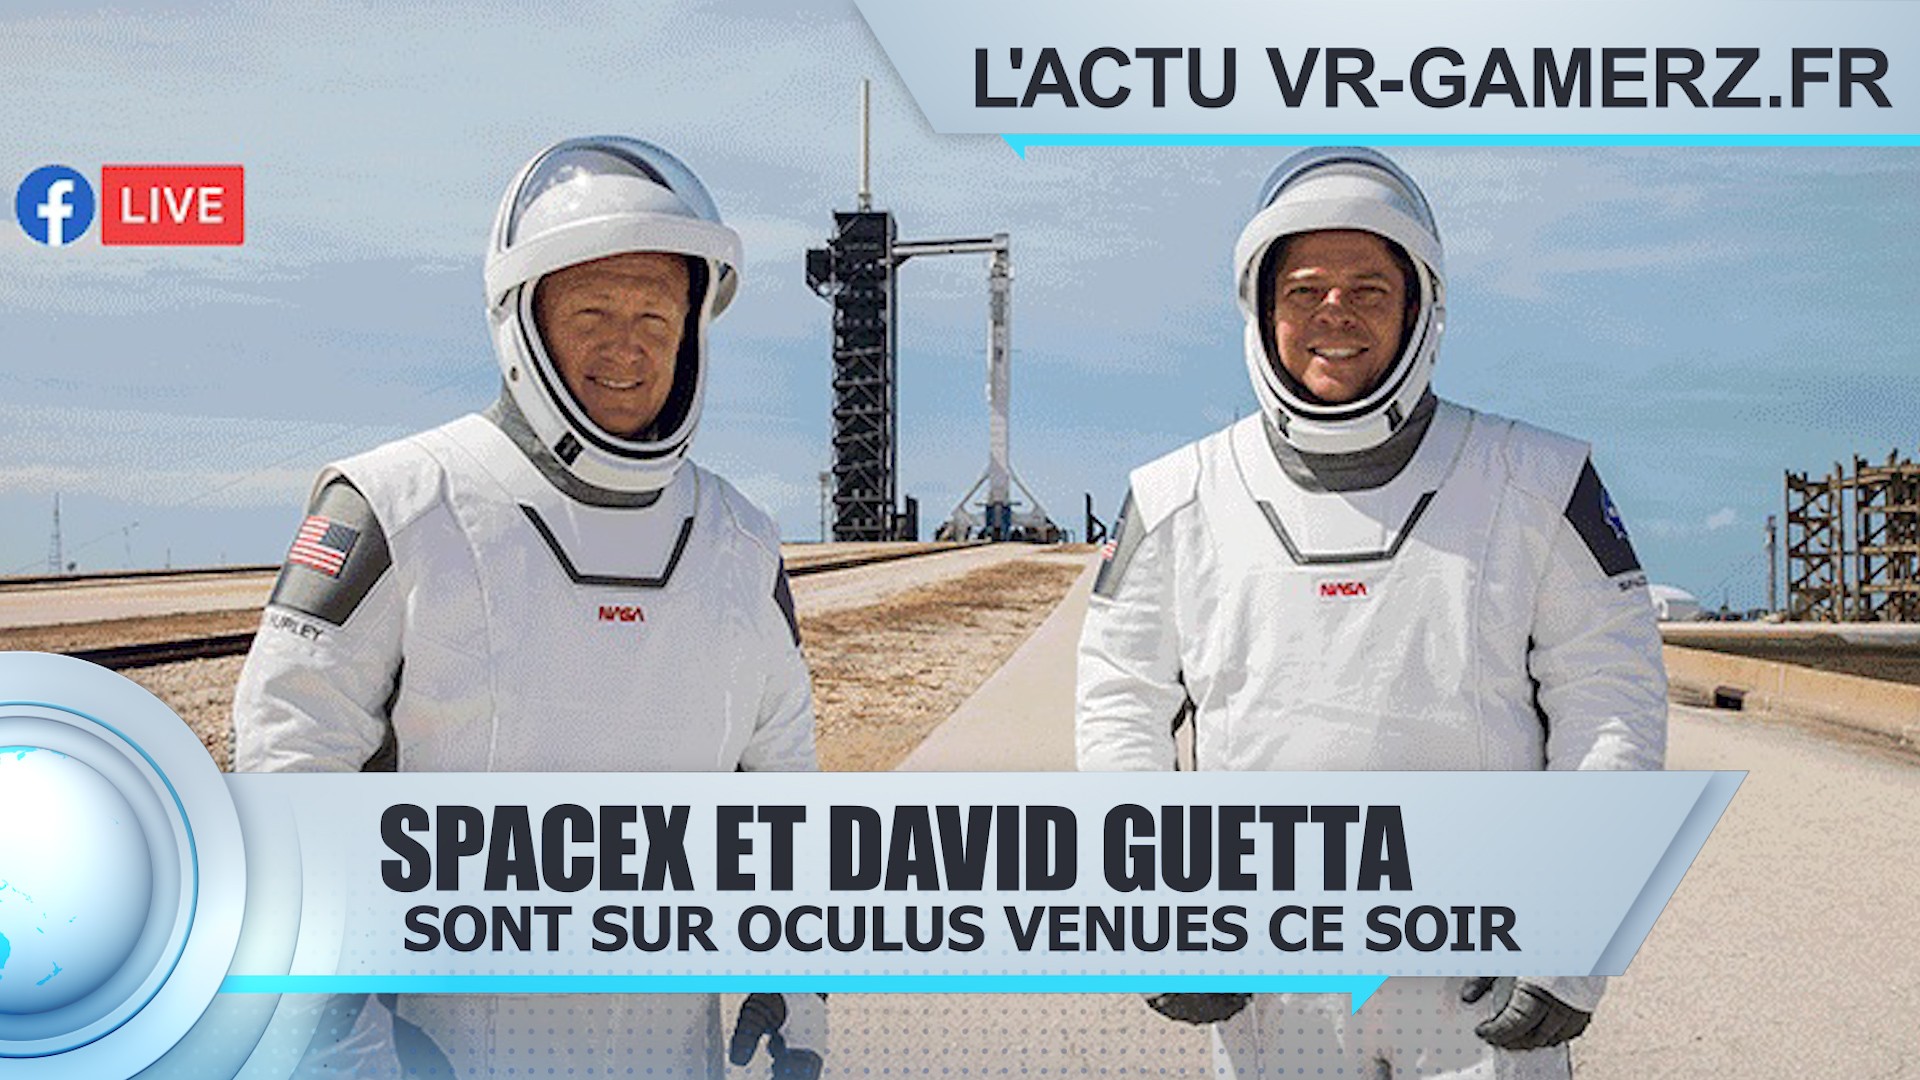 SpaceX et David Guetta seront sur Oculus venues ce soir